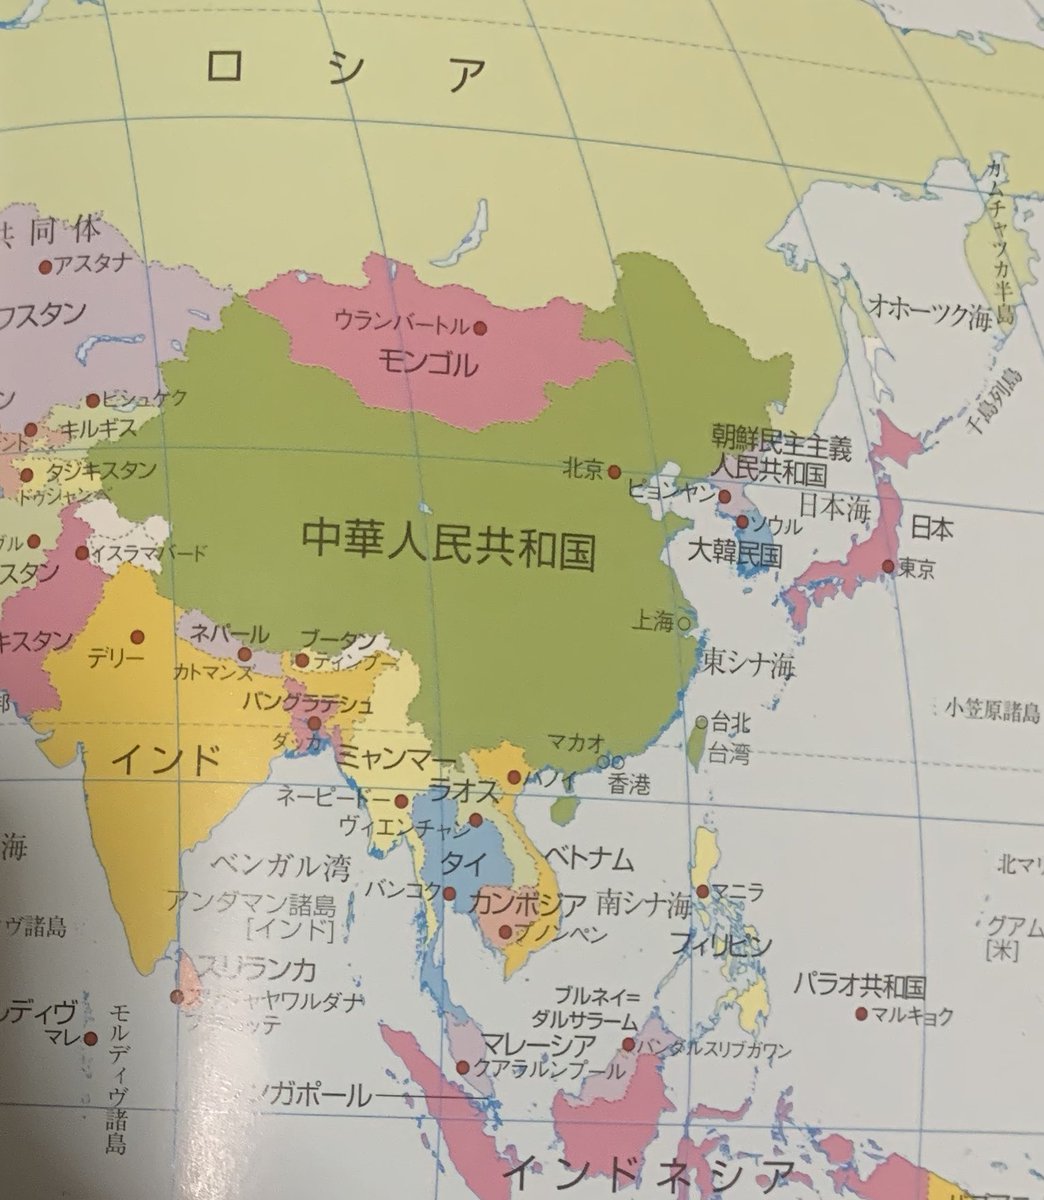 舟 とりあえず今 タイがどこにあるのか今一度調べました 小並感 白地図あったら塗りたいですが 何でも大人の塗り絵になり得ます 北西にミャンマー 北東にラオス 南にマレーシア シンガポール インドネシア 東側にカンボジア ベトナム